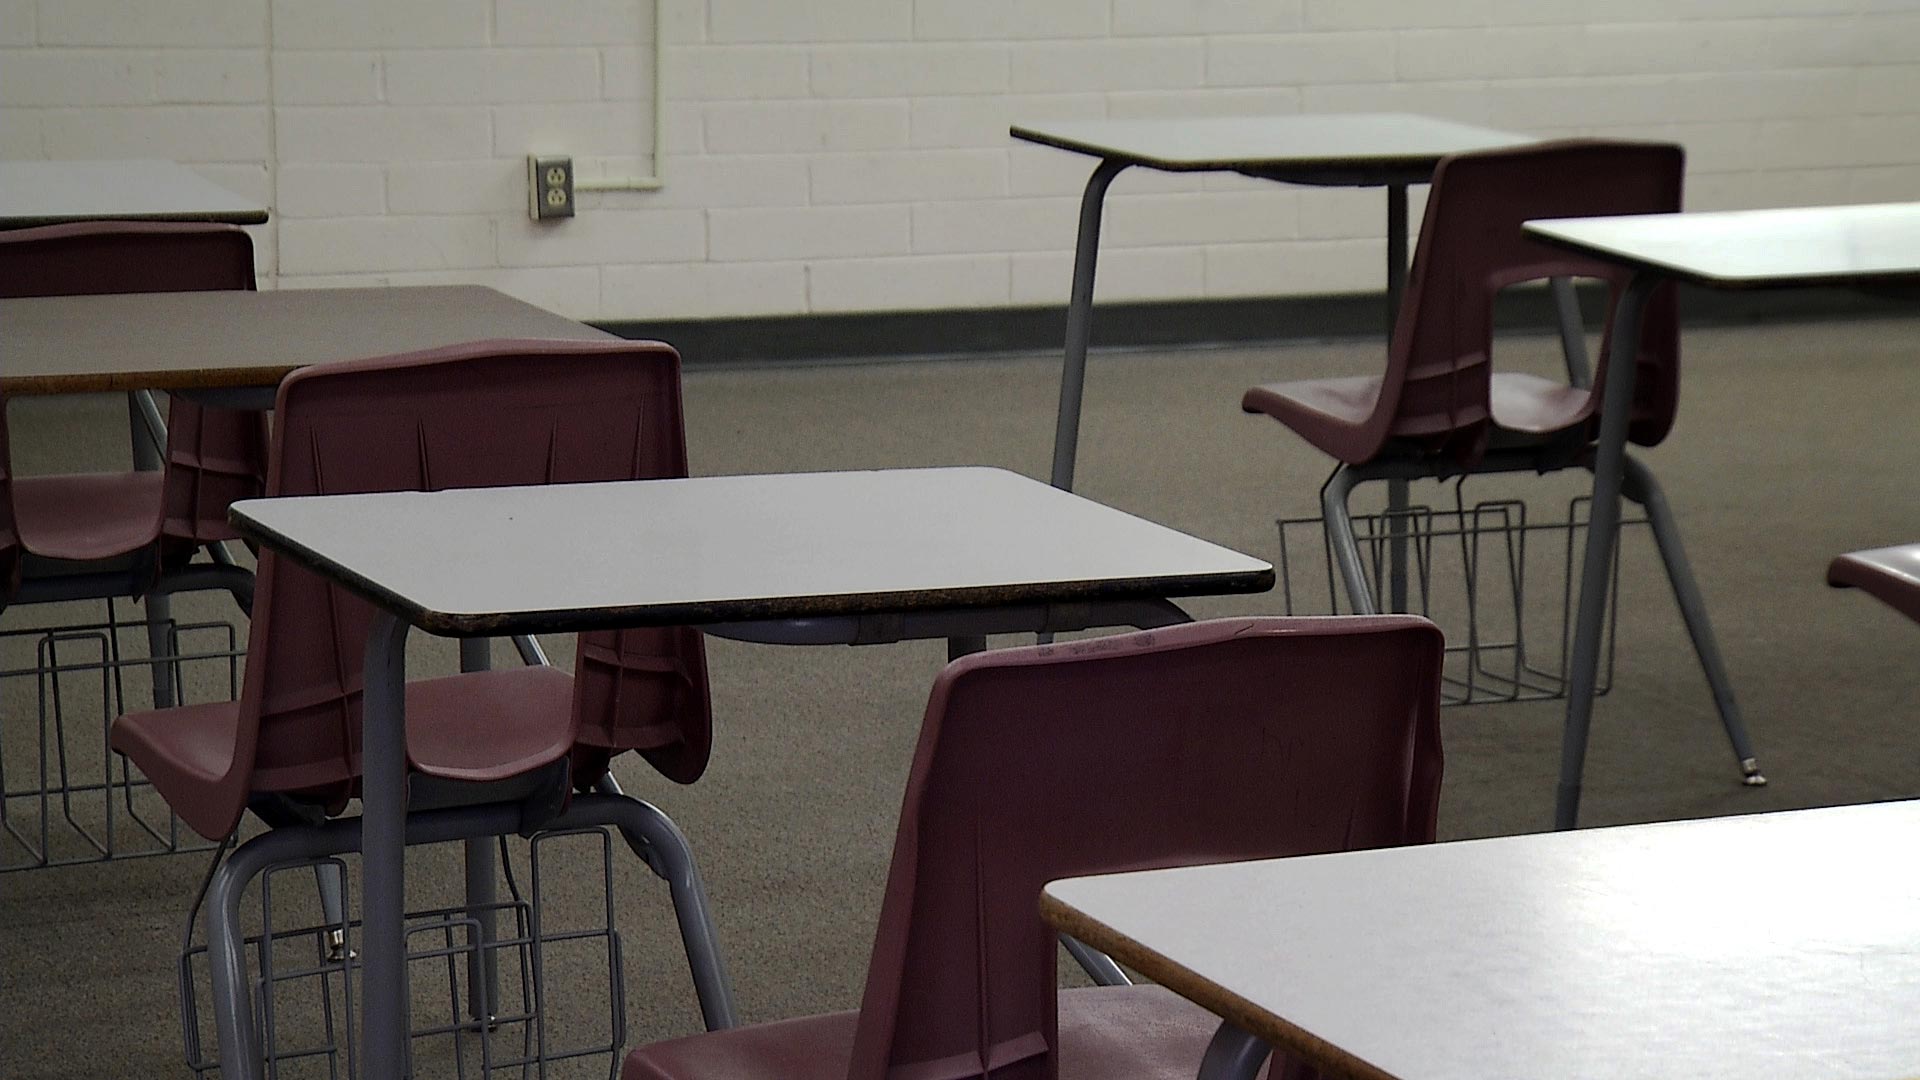 360 empty school desks